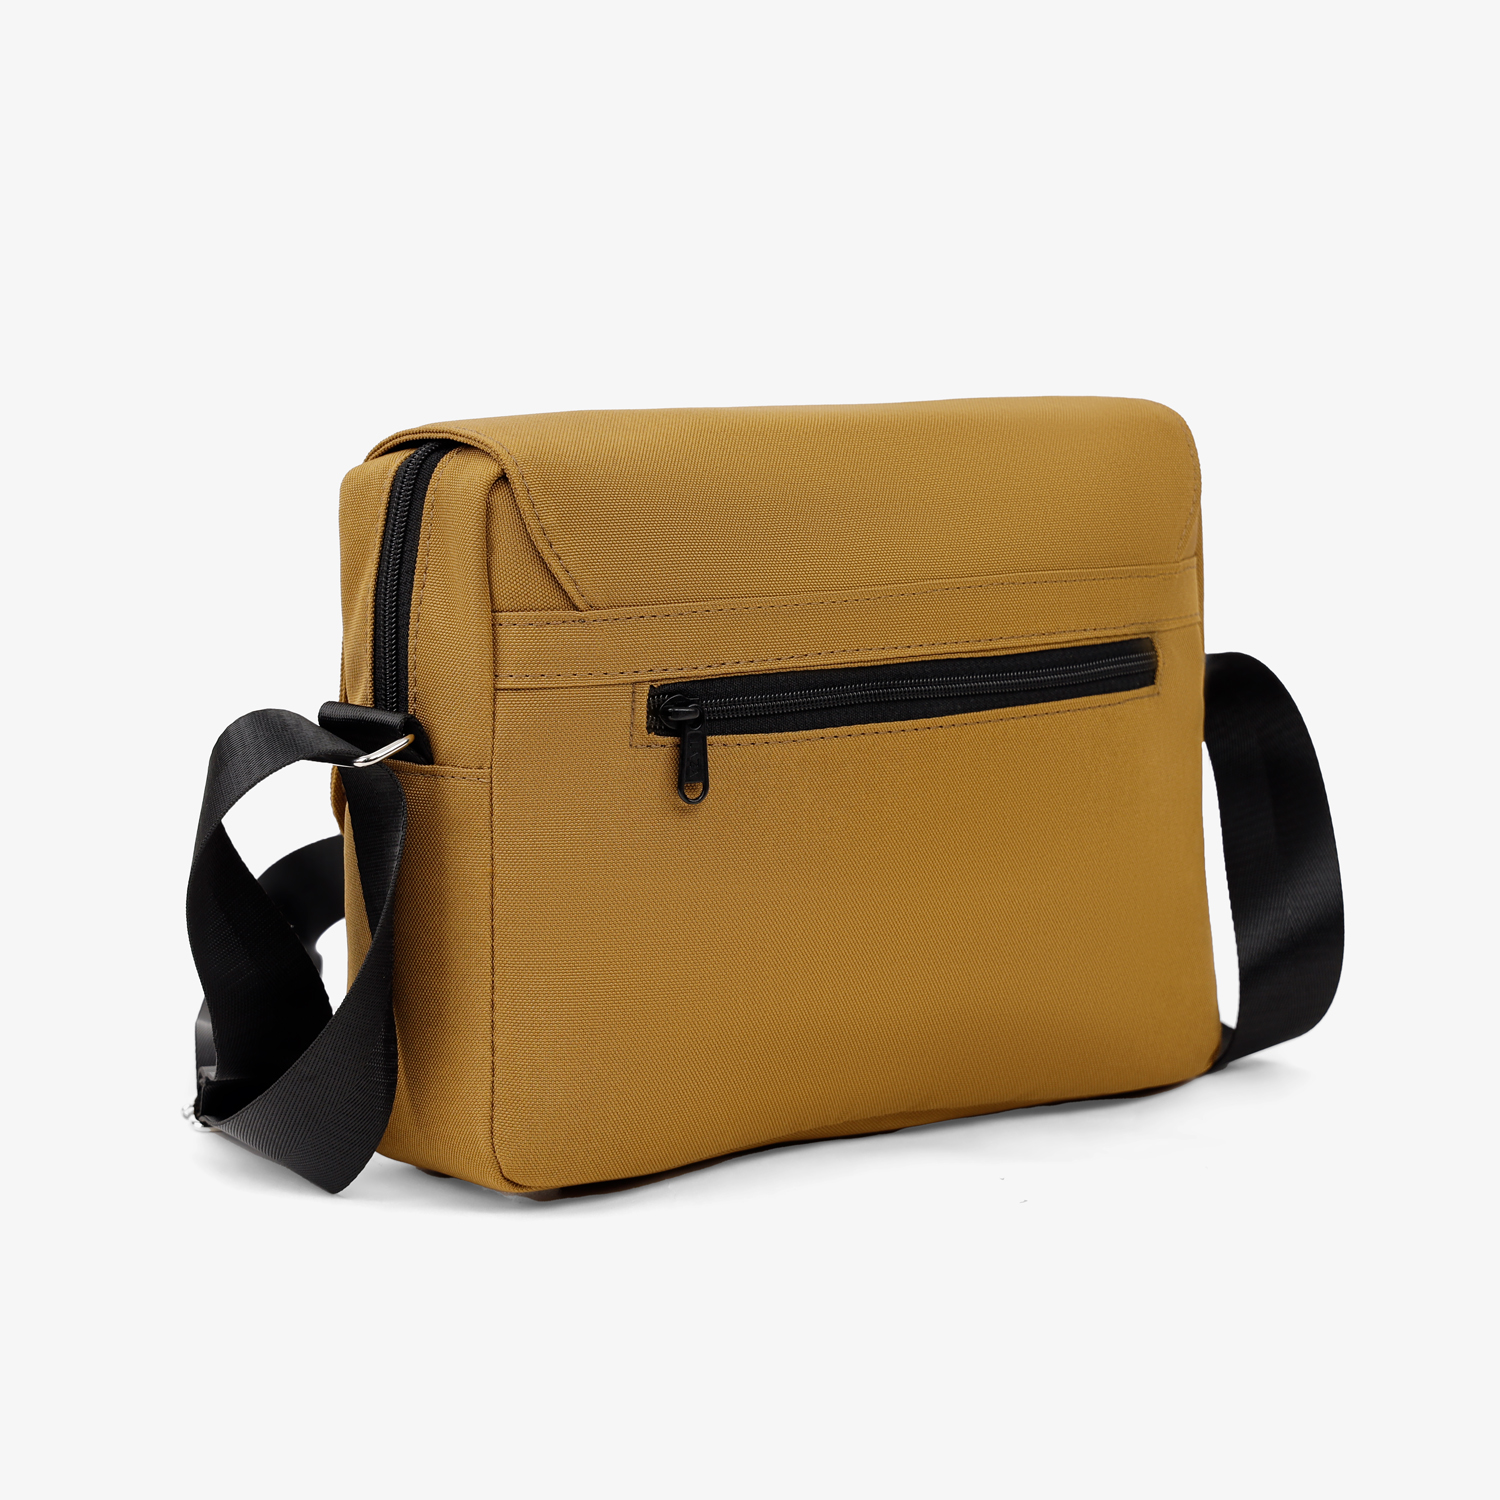 Túi đeo chéo nam nữ Zella Bag 590 - Chất liệu canvas trượt nước cao cấp - Thương hiệu LAZA - Premium collection